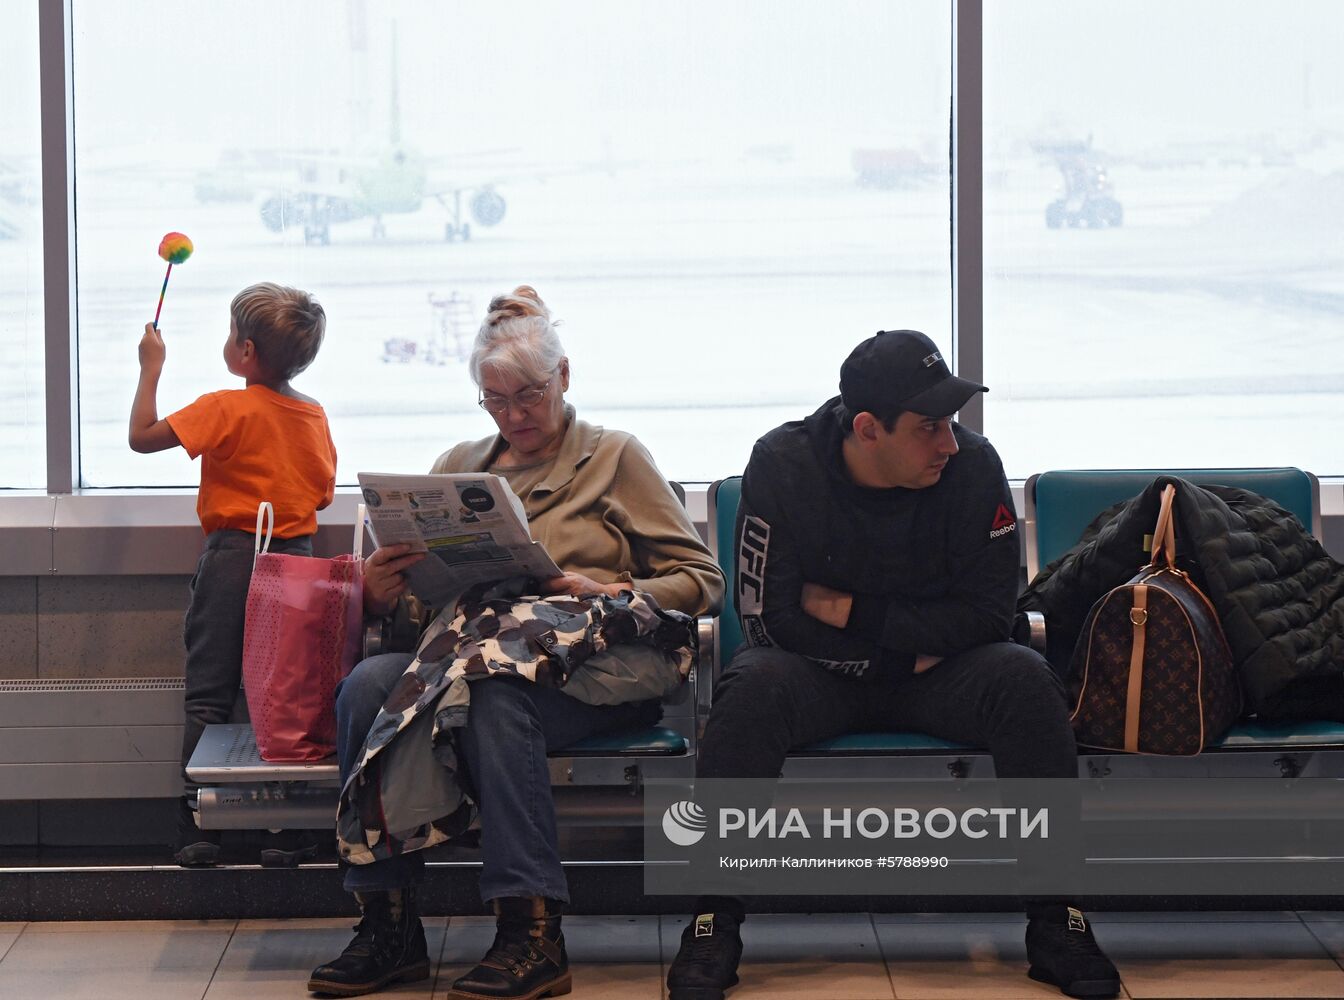 Аэропорт Домодедово 